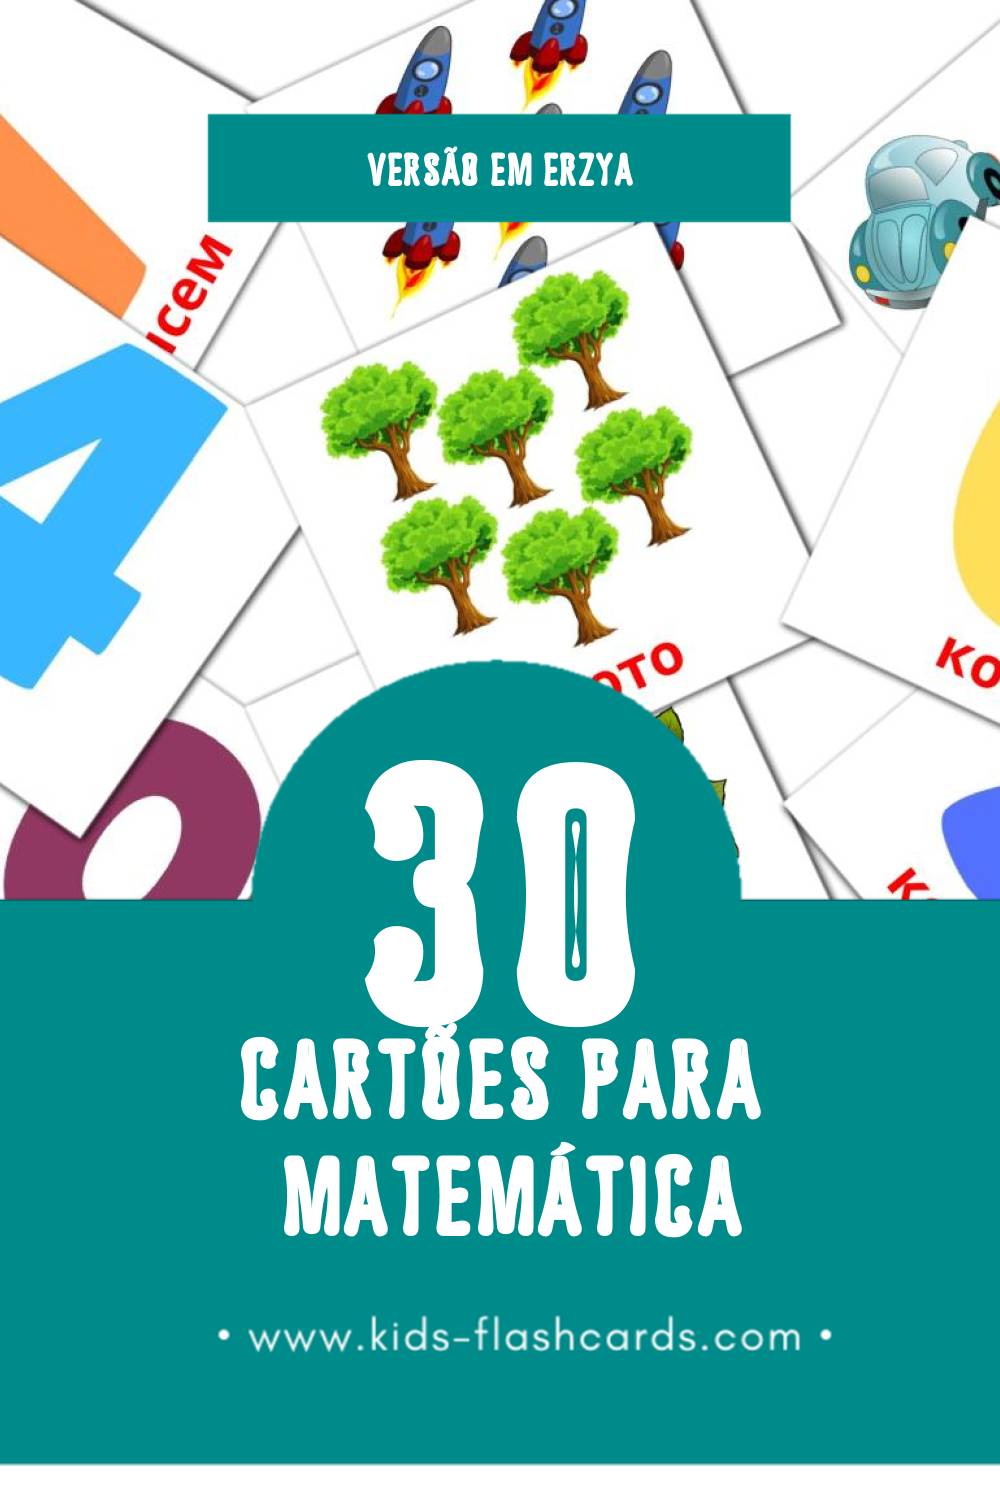 Flashcards de Математика Visuais para Toddlers (30 cartões em Erzya)